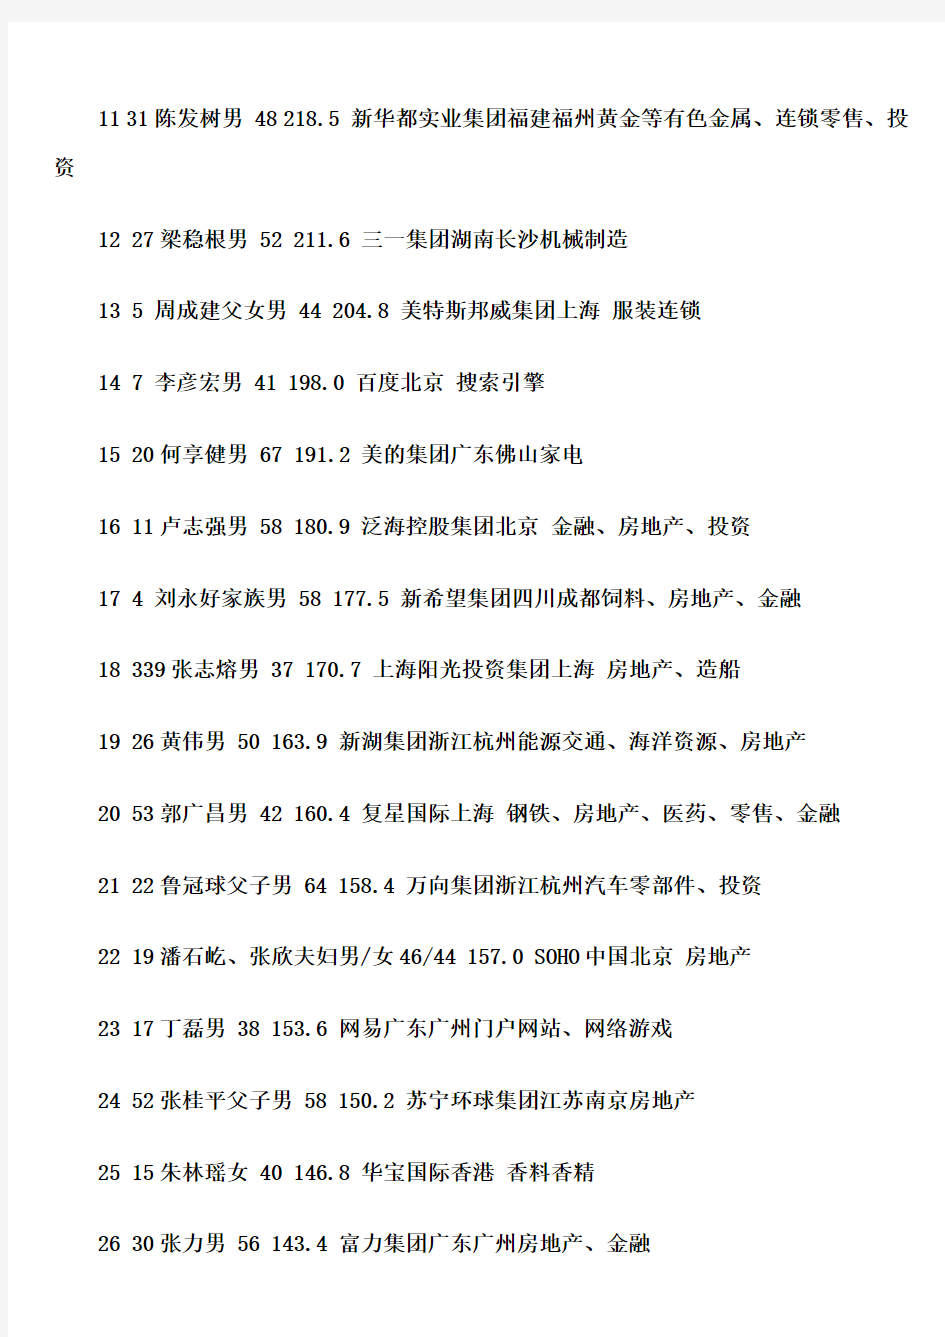 2009年福布斯中国富豪榜(1-400名全部名单)